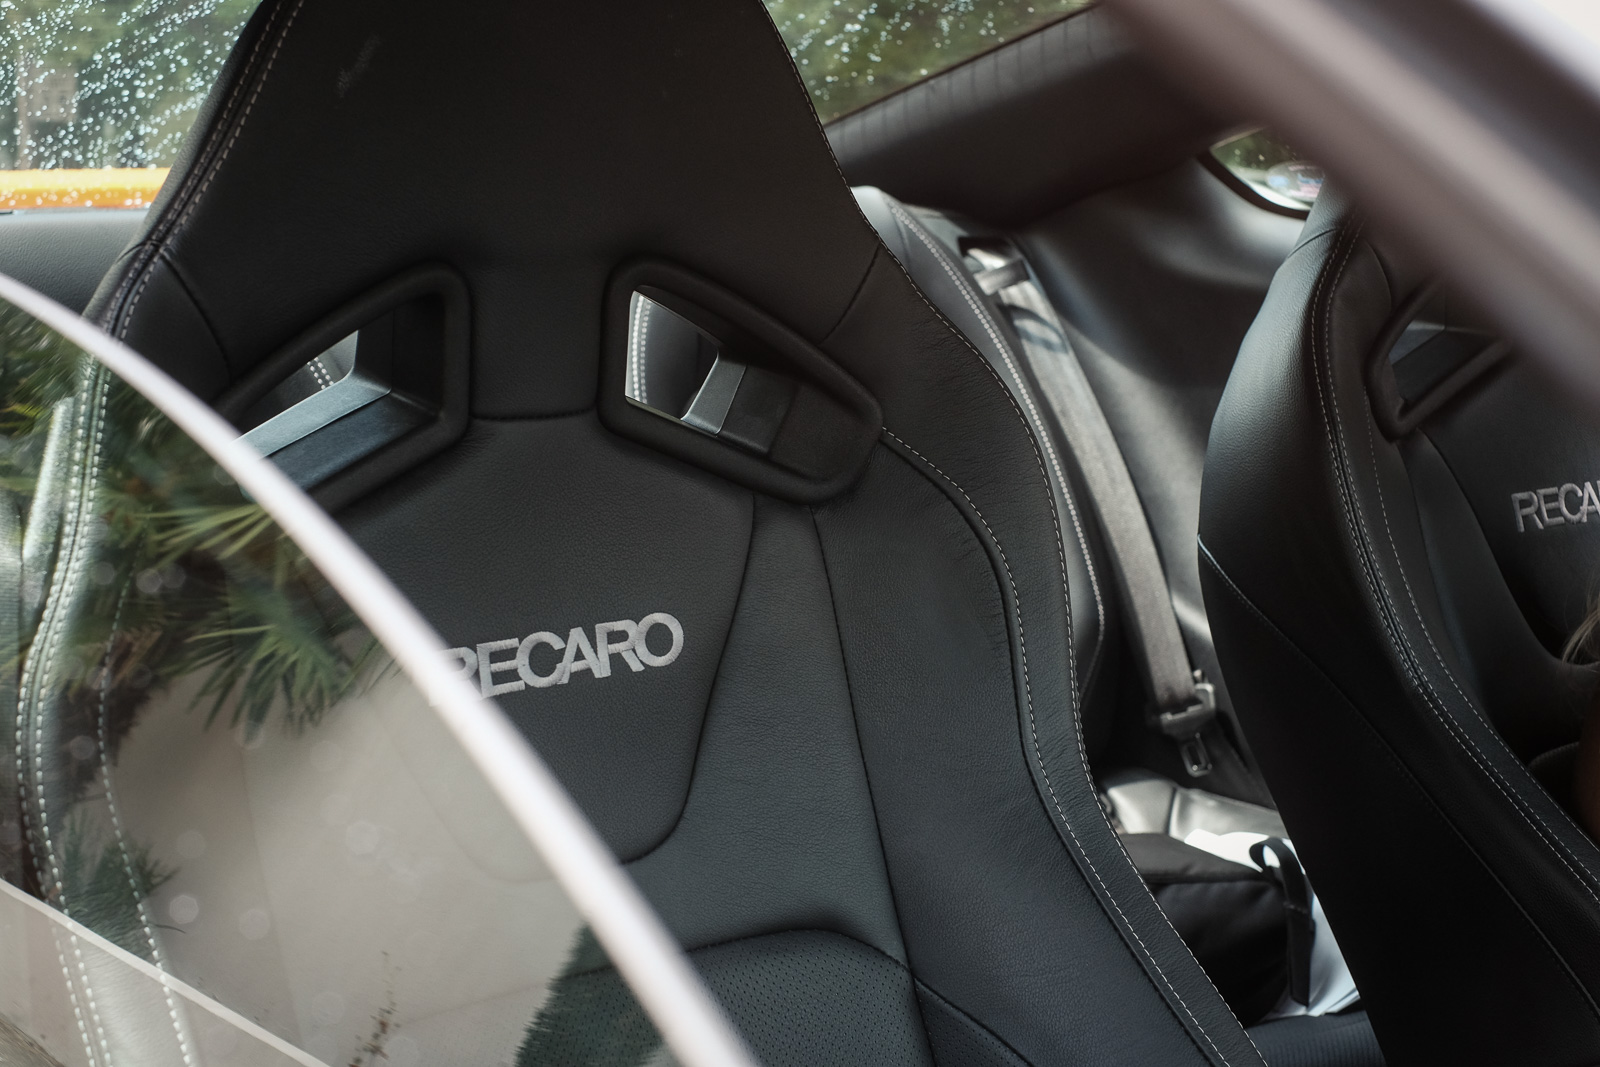 2018 Ford Mustang GT recaro